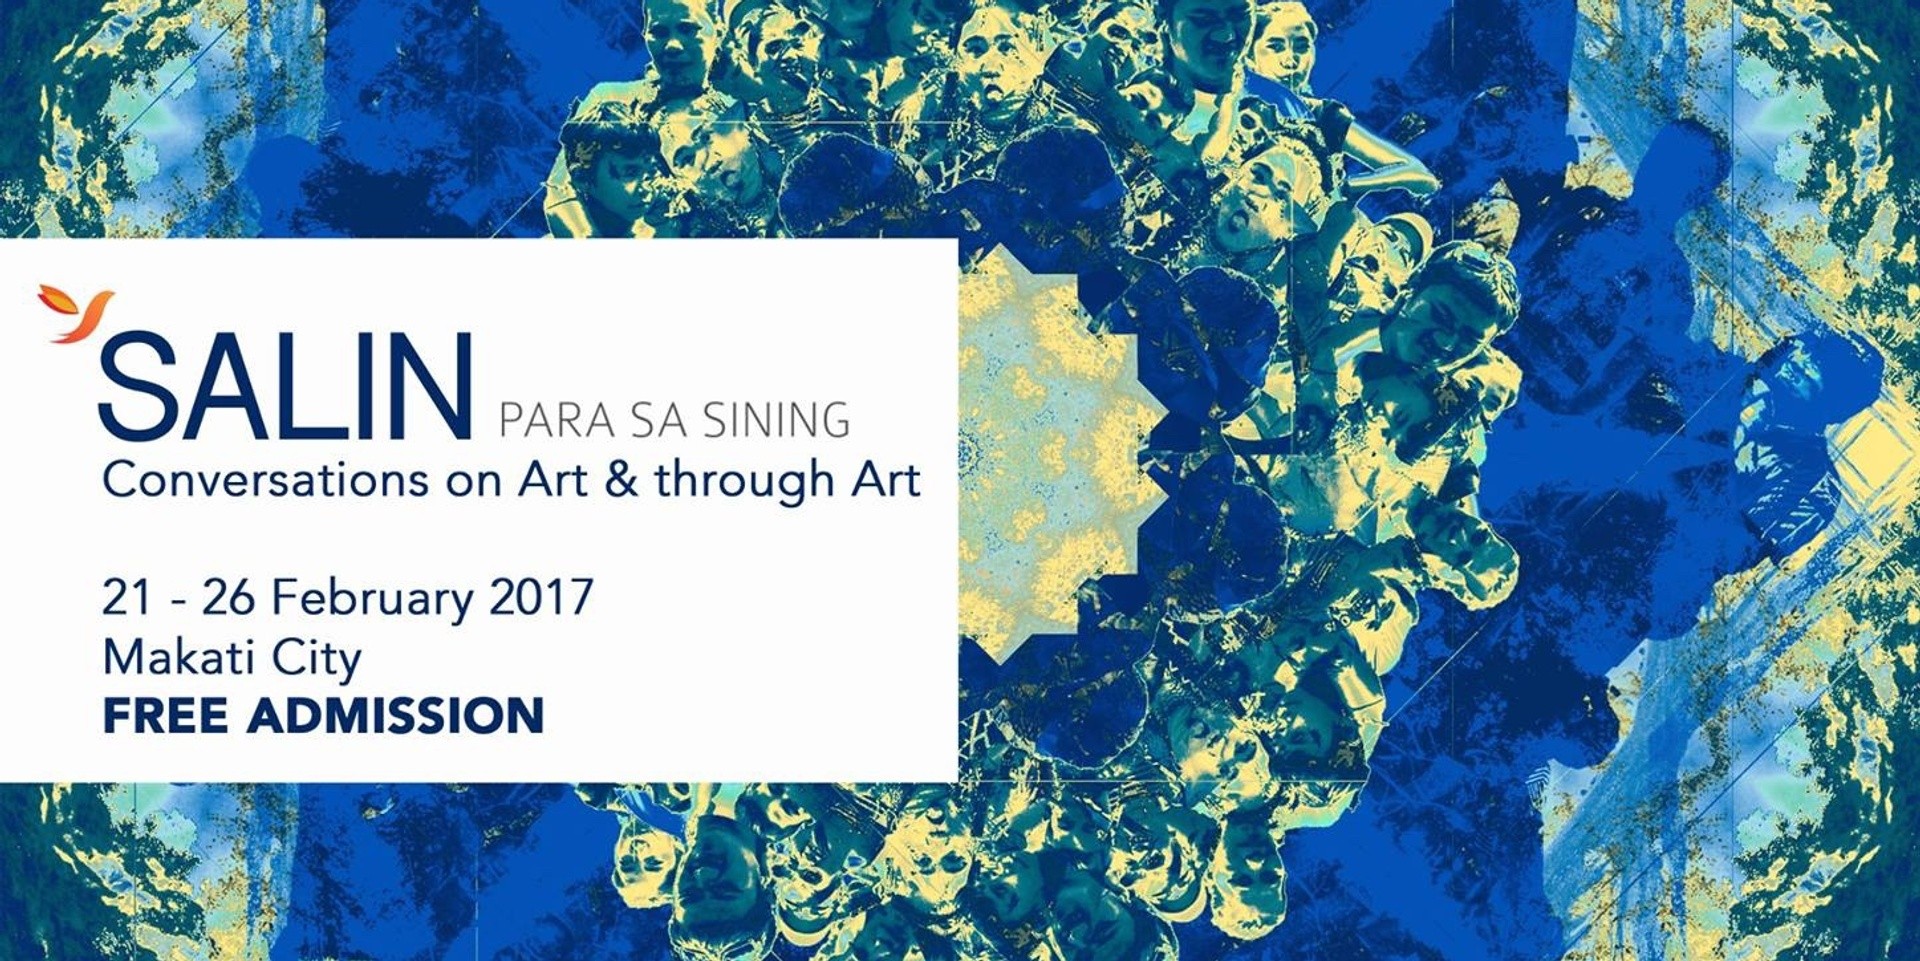 Para sa Sining's SALIN: Malayang Talakayan invites artists to join conversations on Filipino arts and culture